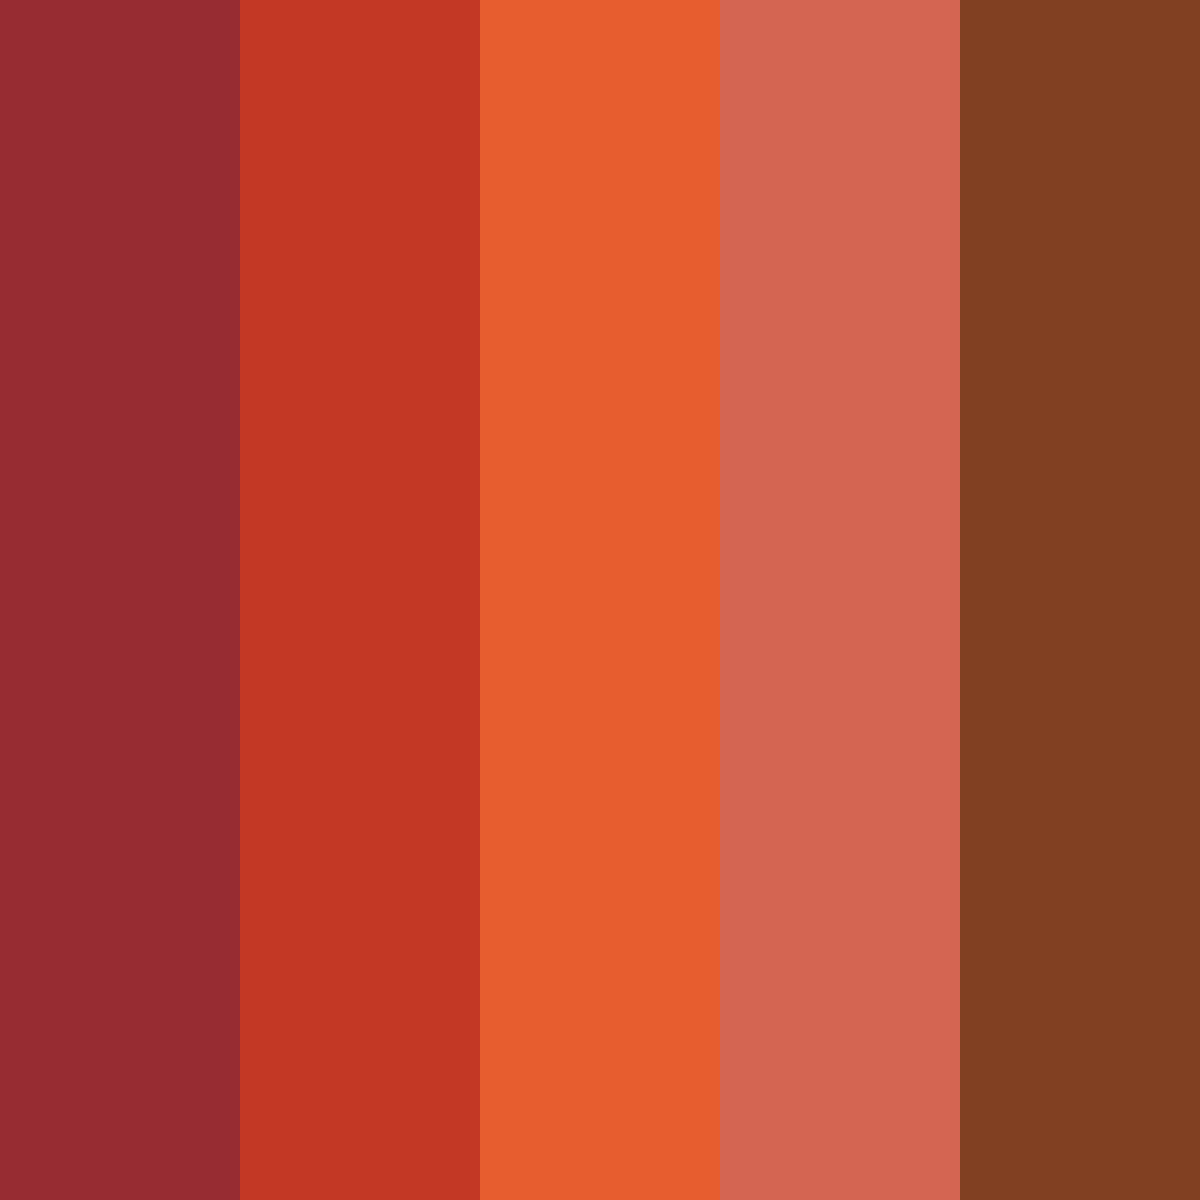 Autumn palette #1 is a Warm color mix for autumn season